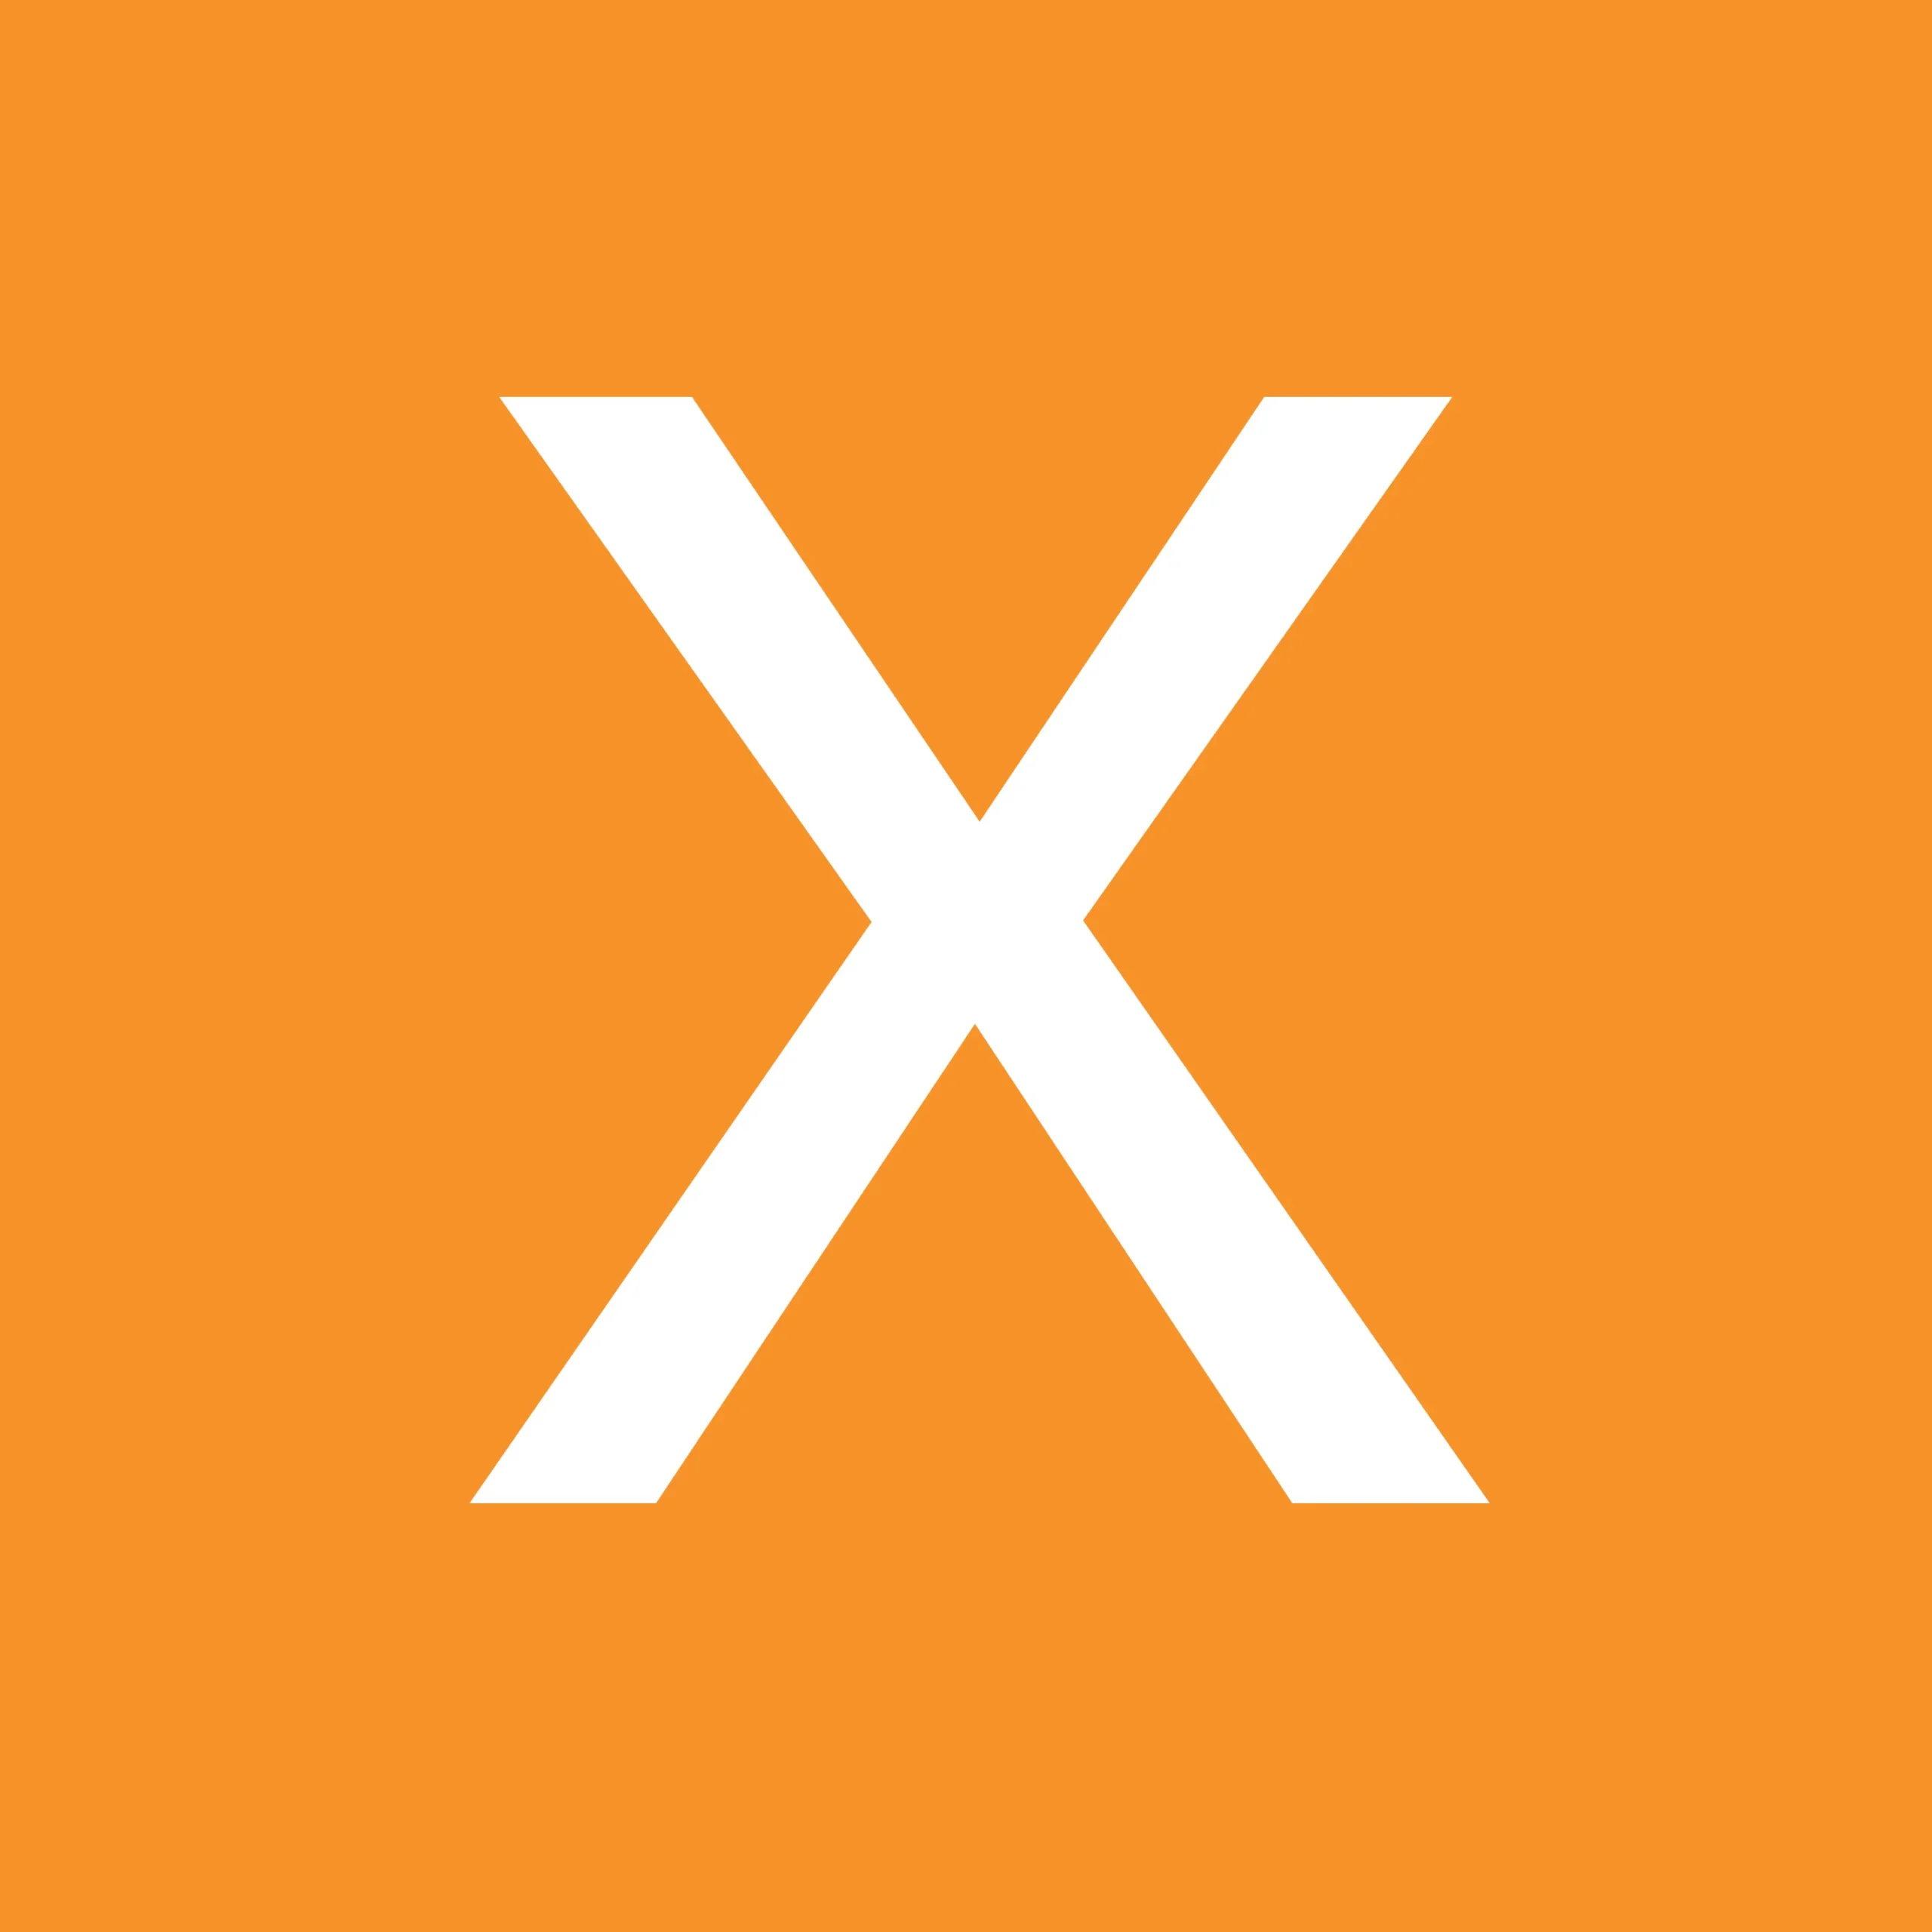 Weißes X auf orangem Hintergrund